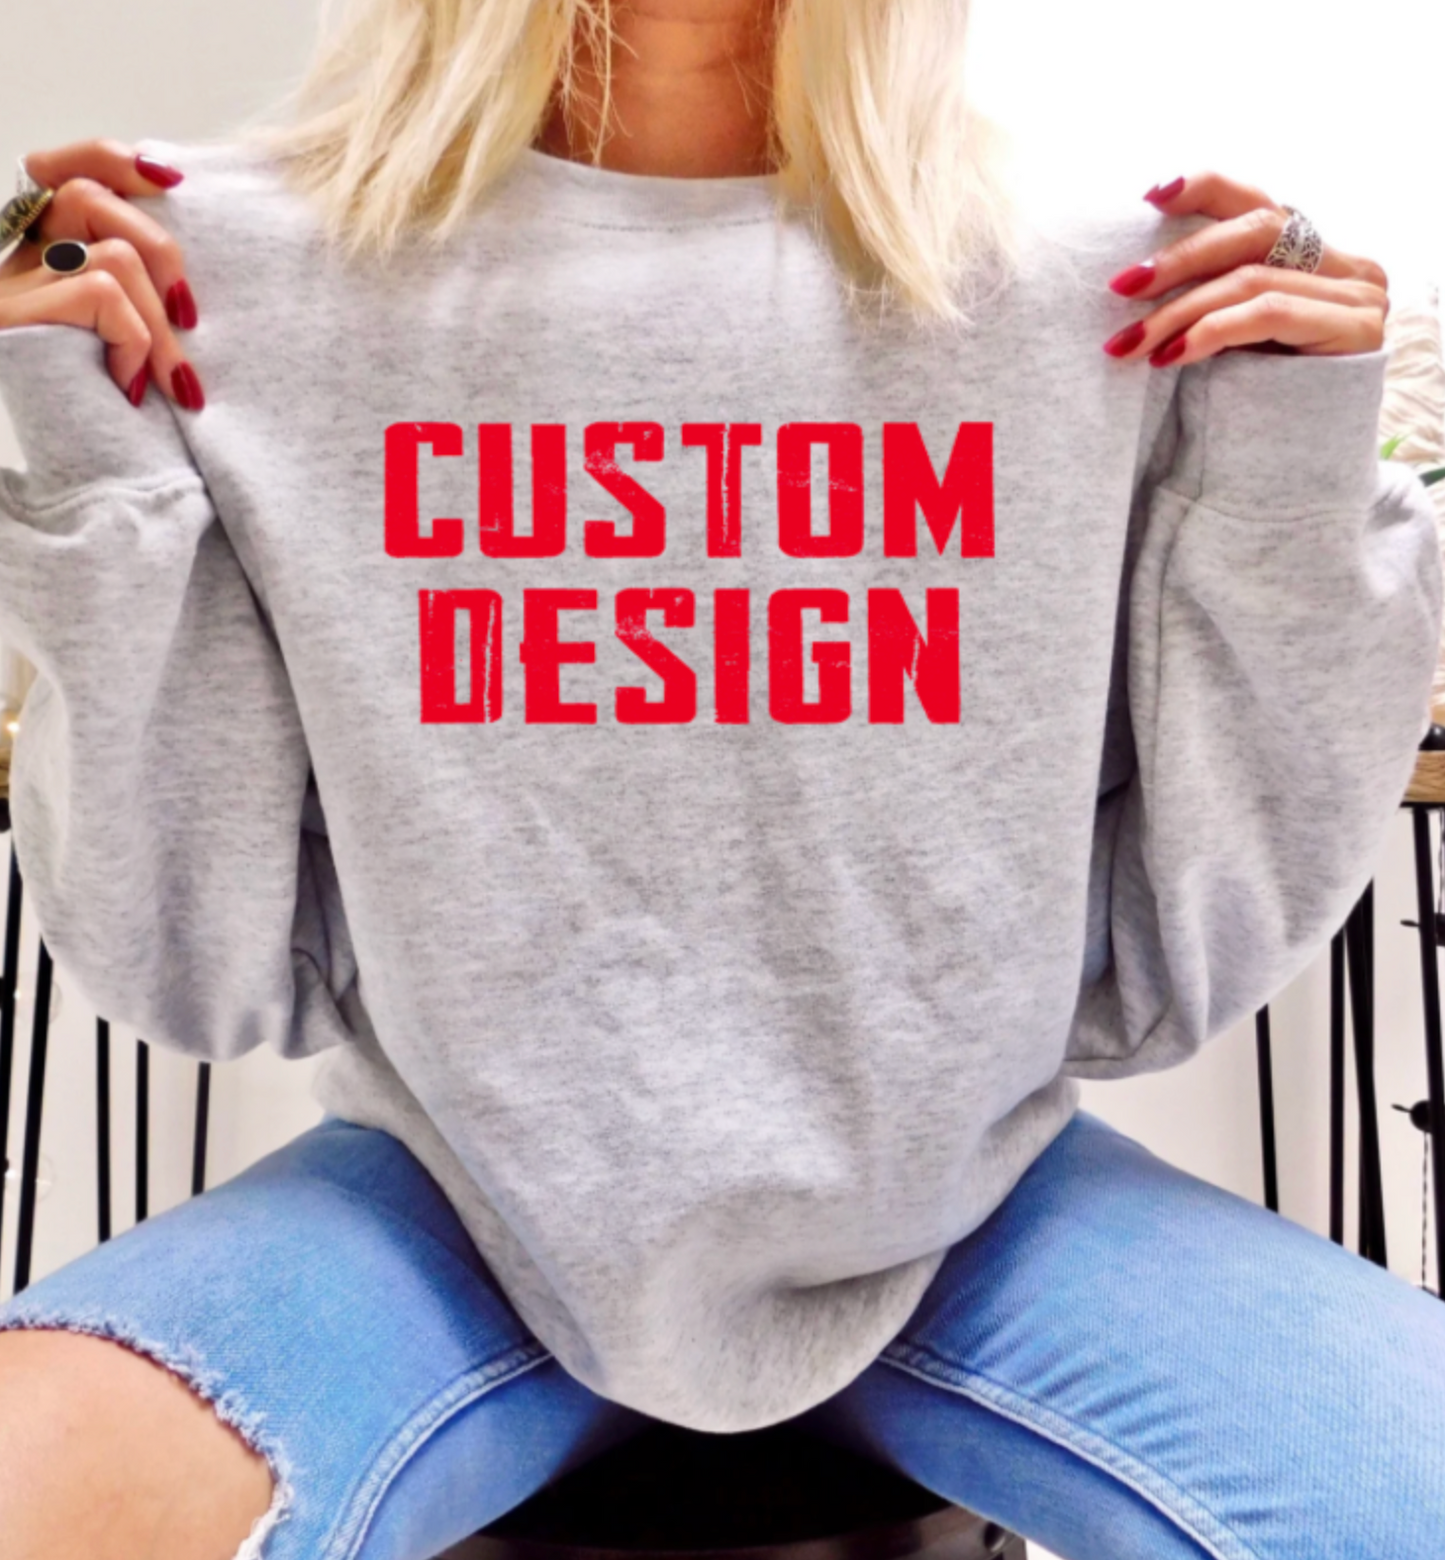 Custom Tshirts, Sweatshirts, Hoodies, + More